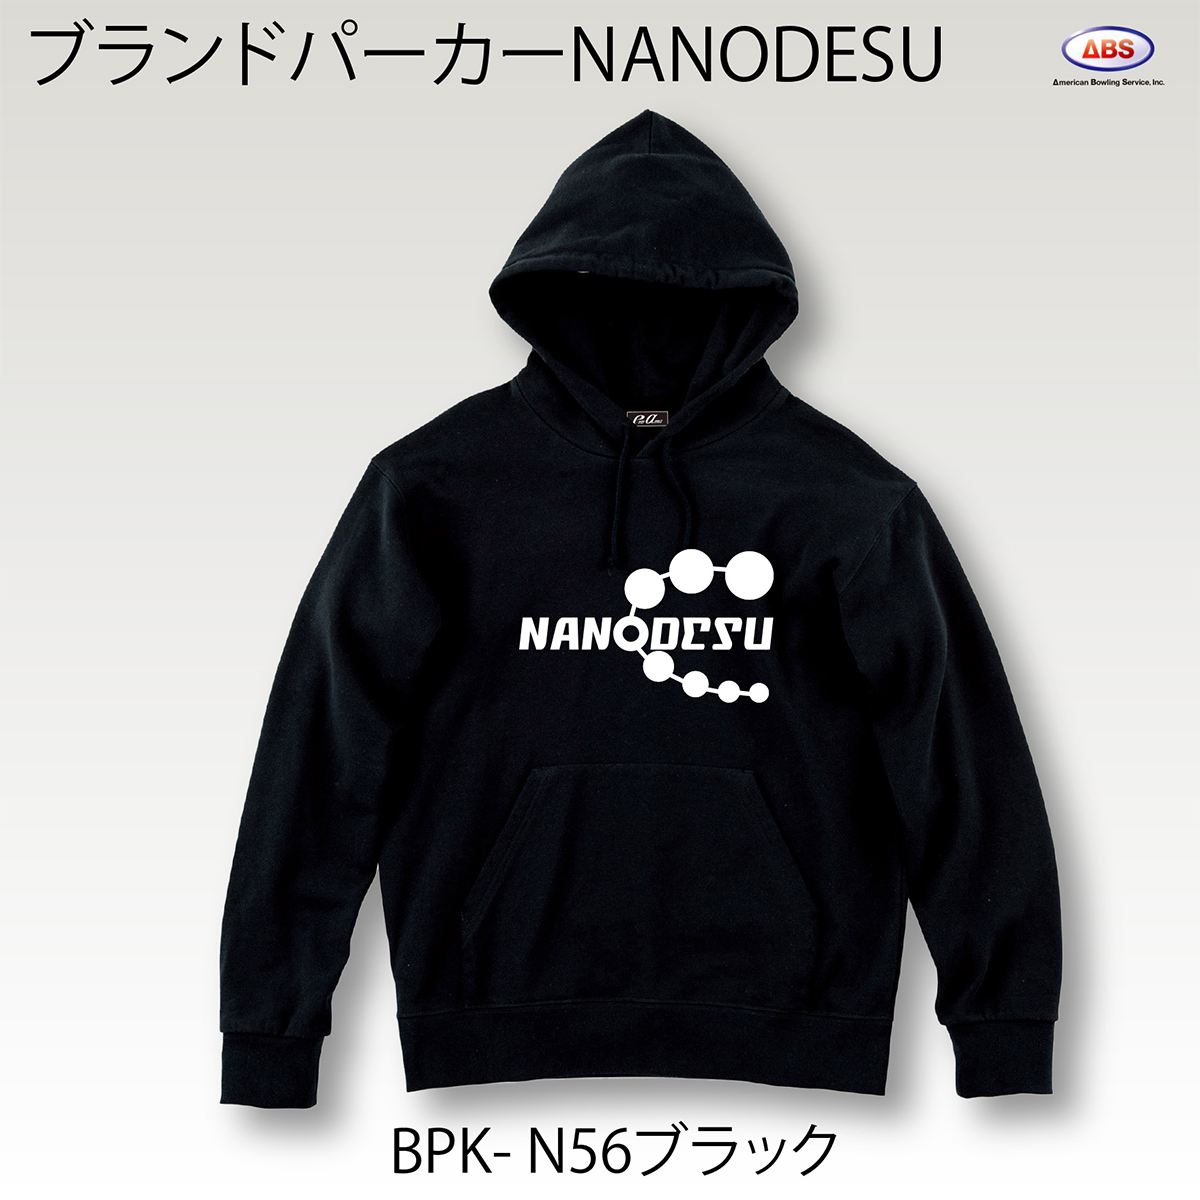 ブランドロゴパーカー(NANODESU)